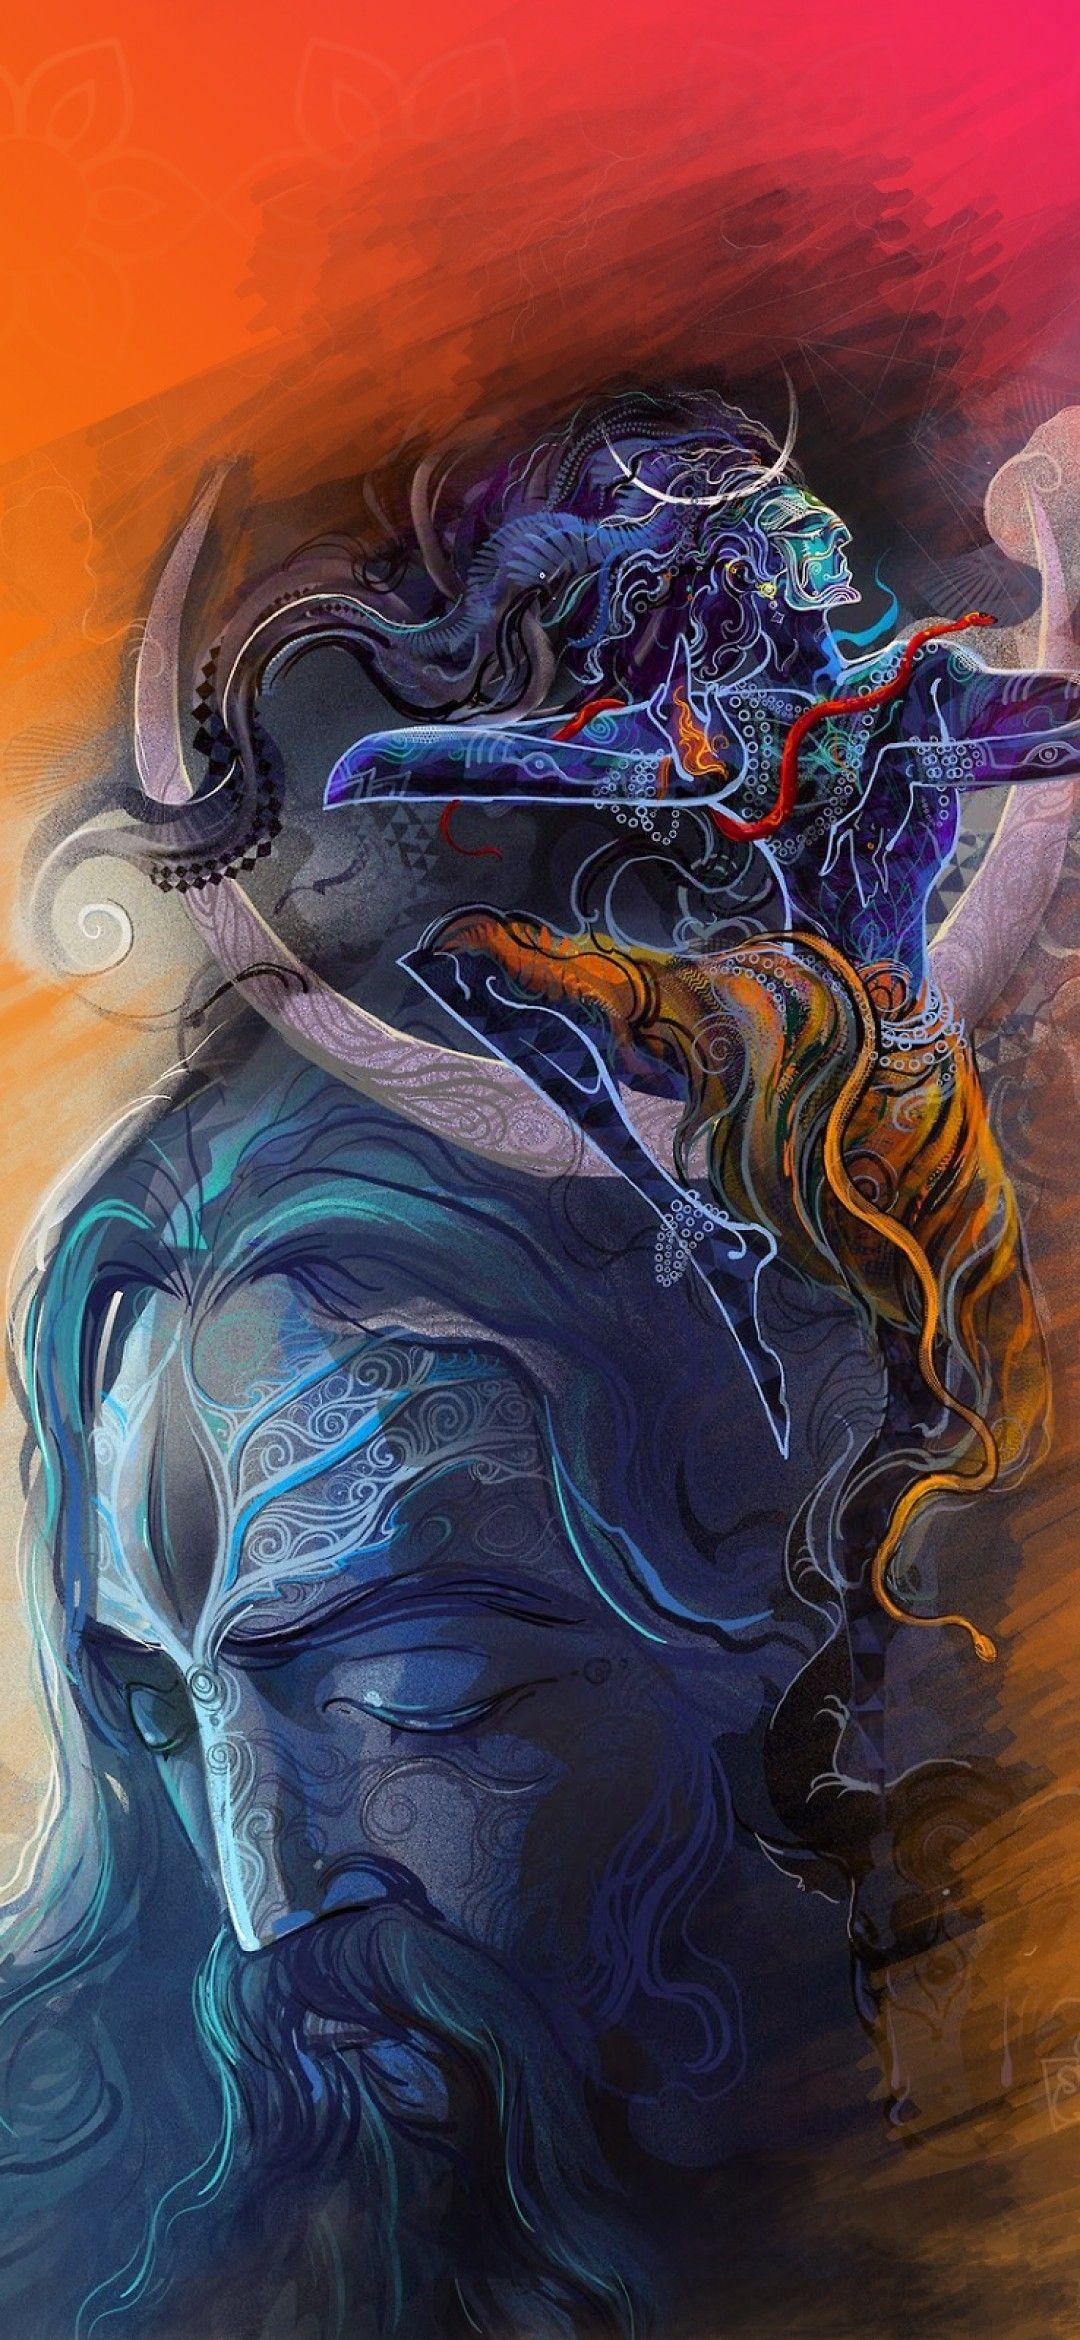 Download 1080x2340 Indian God, Lord Shiva, Digital Art Wallpaper